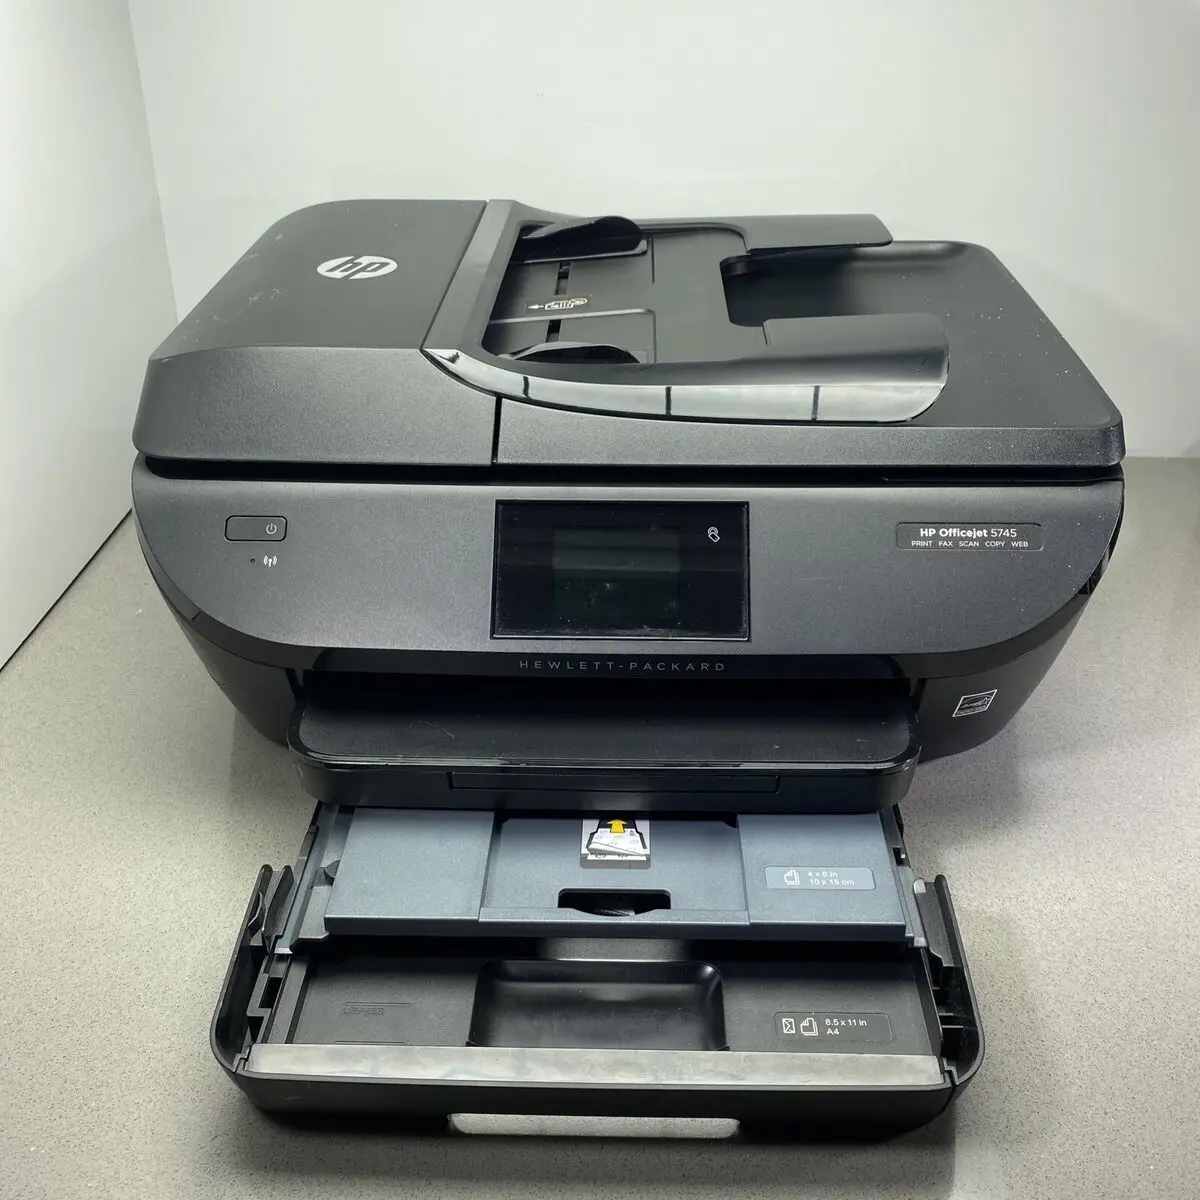 hewlett packard printer 5745 - How do I connect my HP Officejet 5745